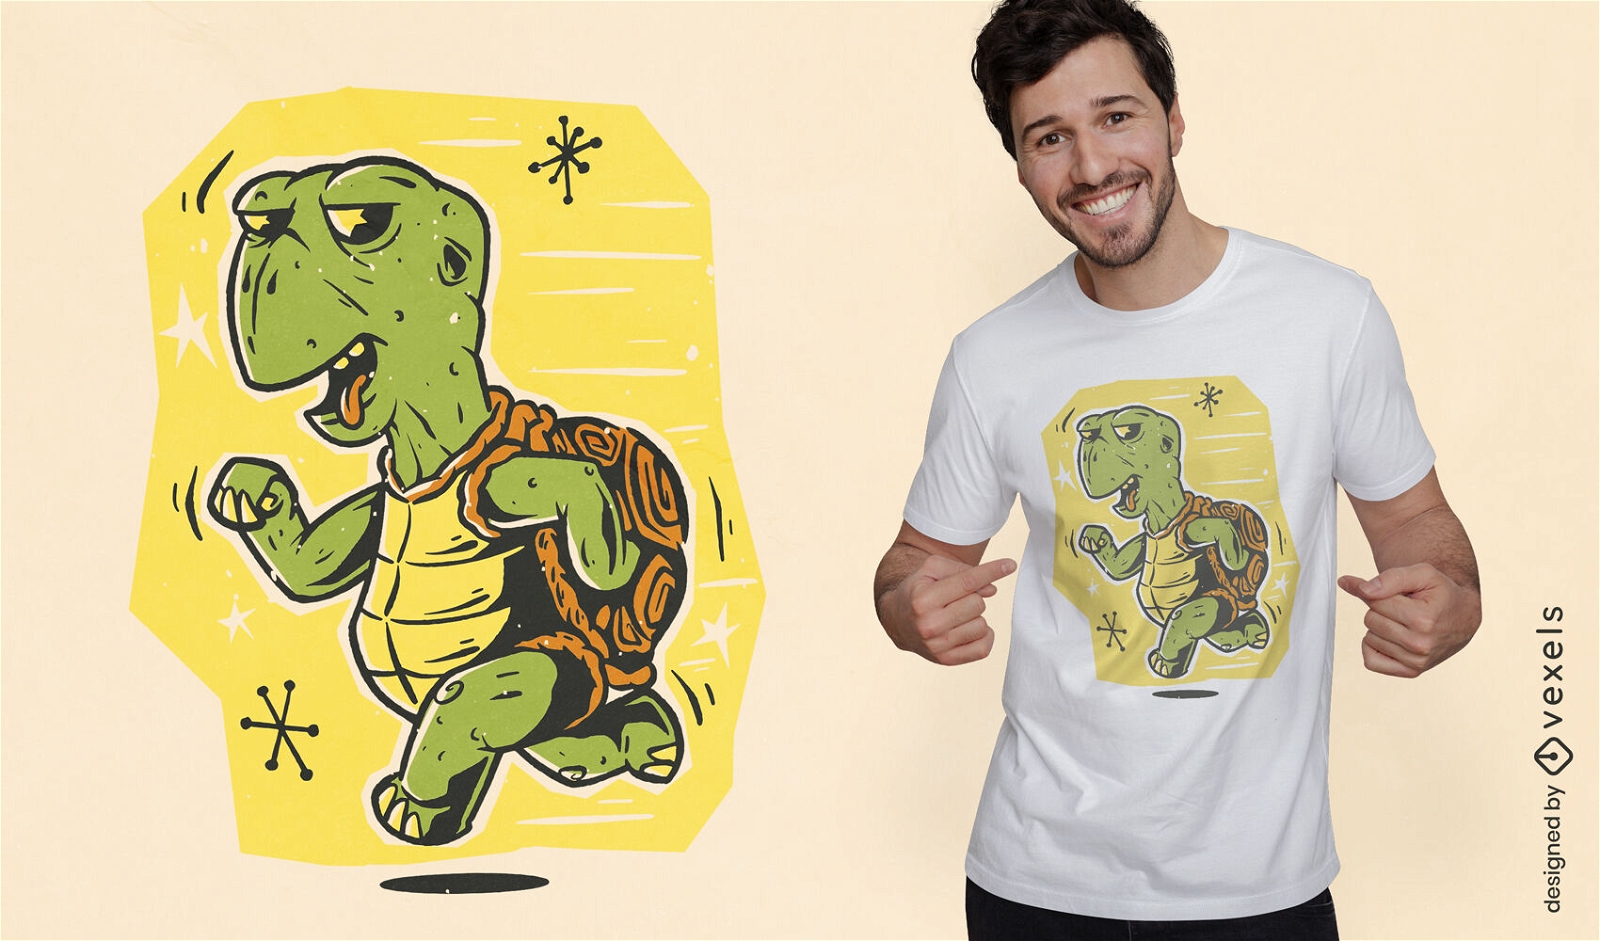 Laufendes Schildkröten-Cartoon-T-Shirt-Design